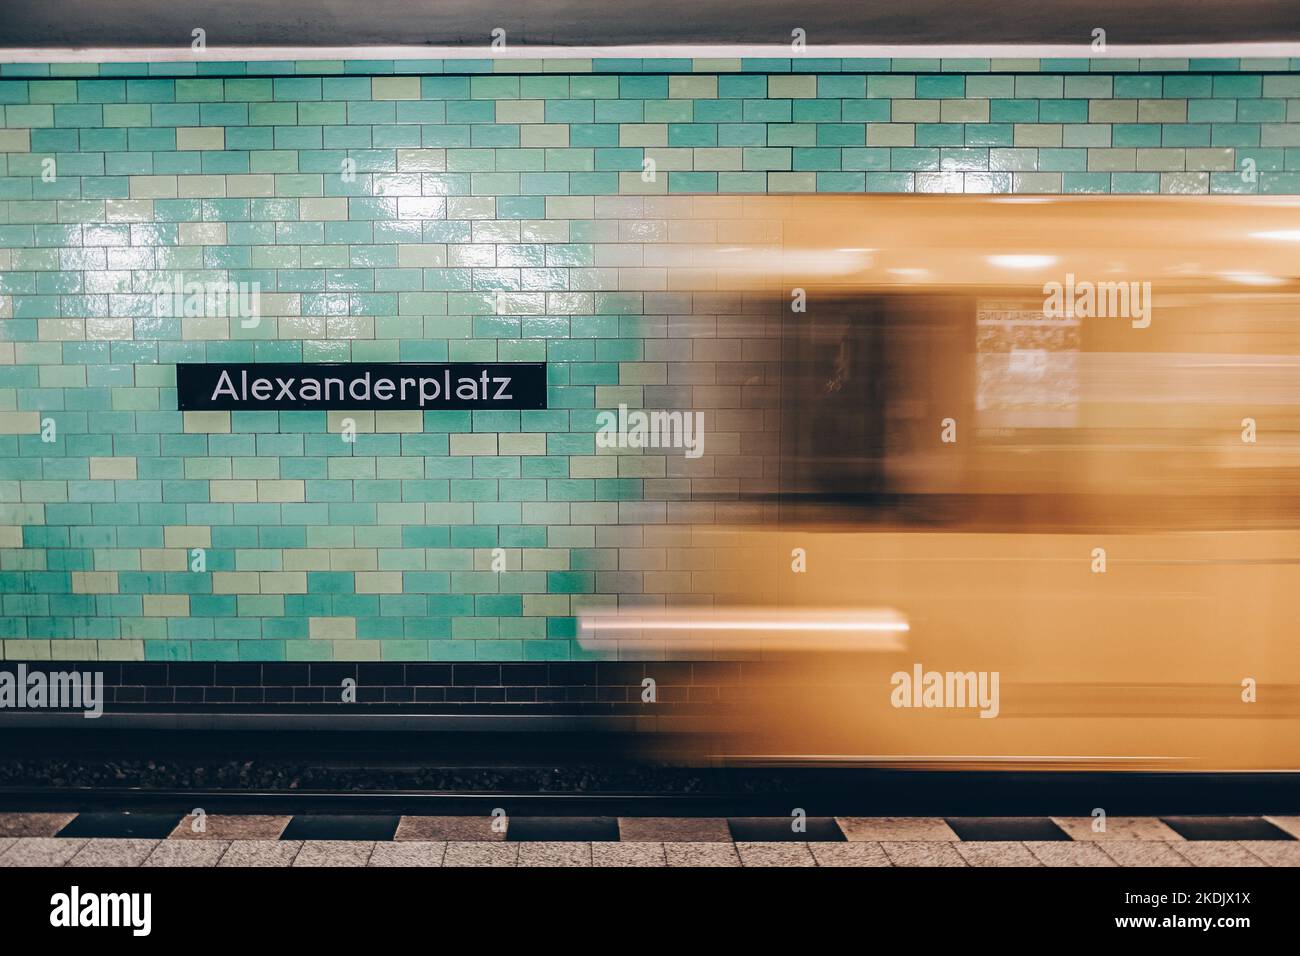 Il giallo alla metropolitana treno in movimento. Berlin Alexanderplatz segno visibile sulla parete della stazione della metropolitana. Foto Stock